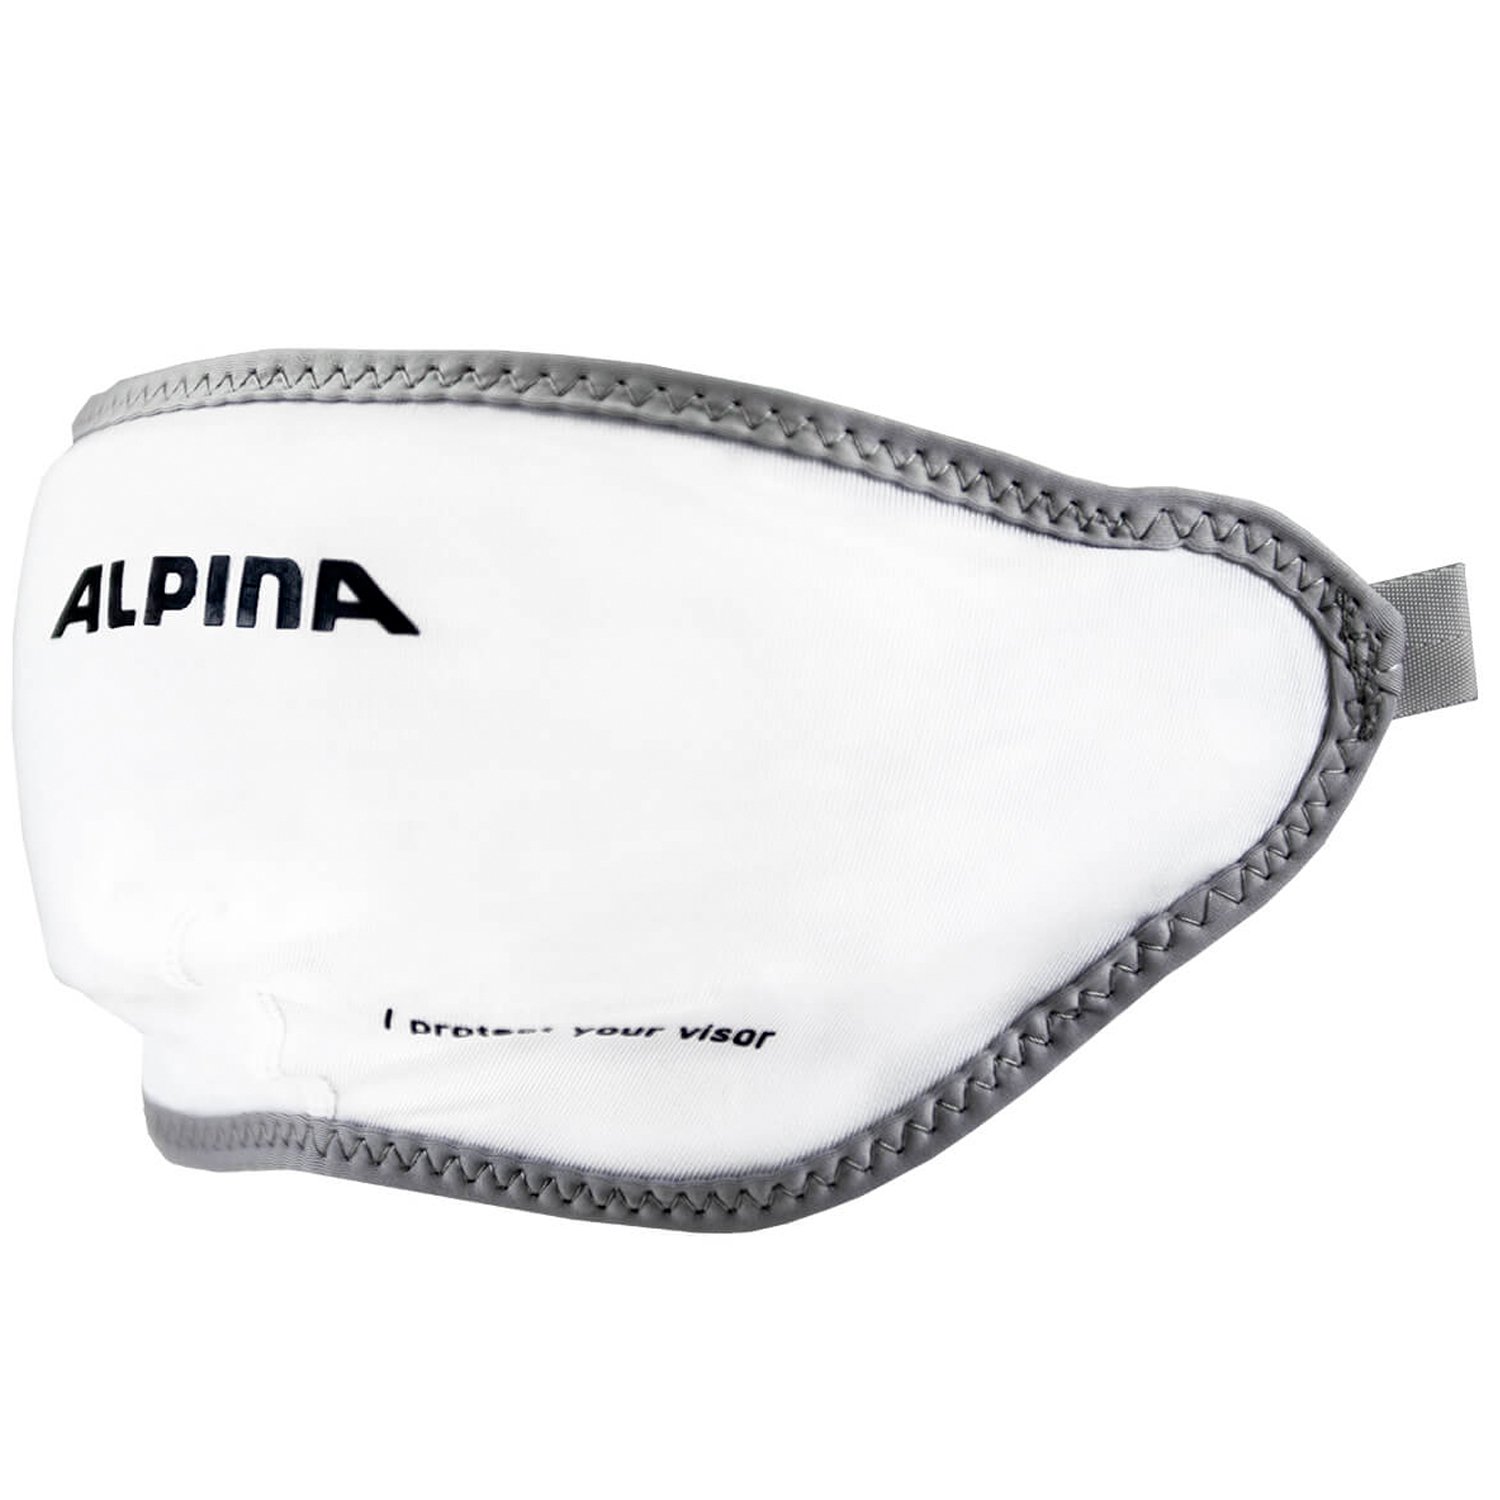 Чехол Alpina Helmet Visor Cover, для визора шлема, 2022-23, белый, A9111993 peg perego чехол в автокресло clima cover viaggio 360 и ff105